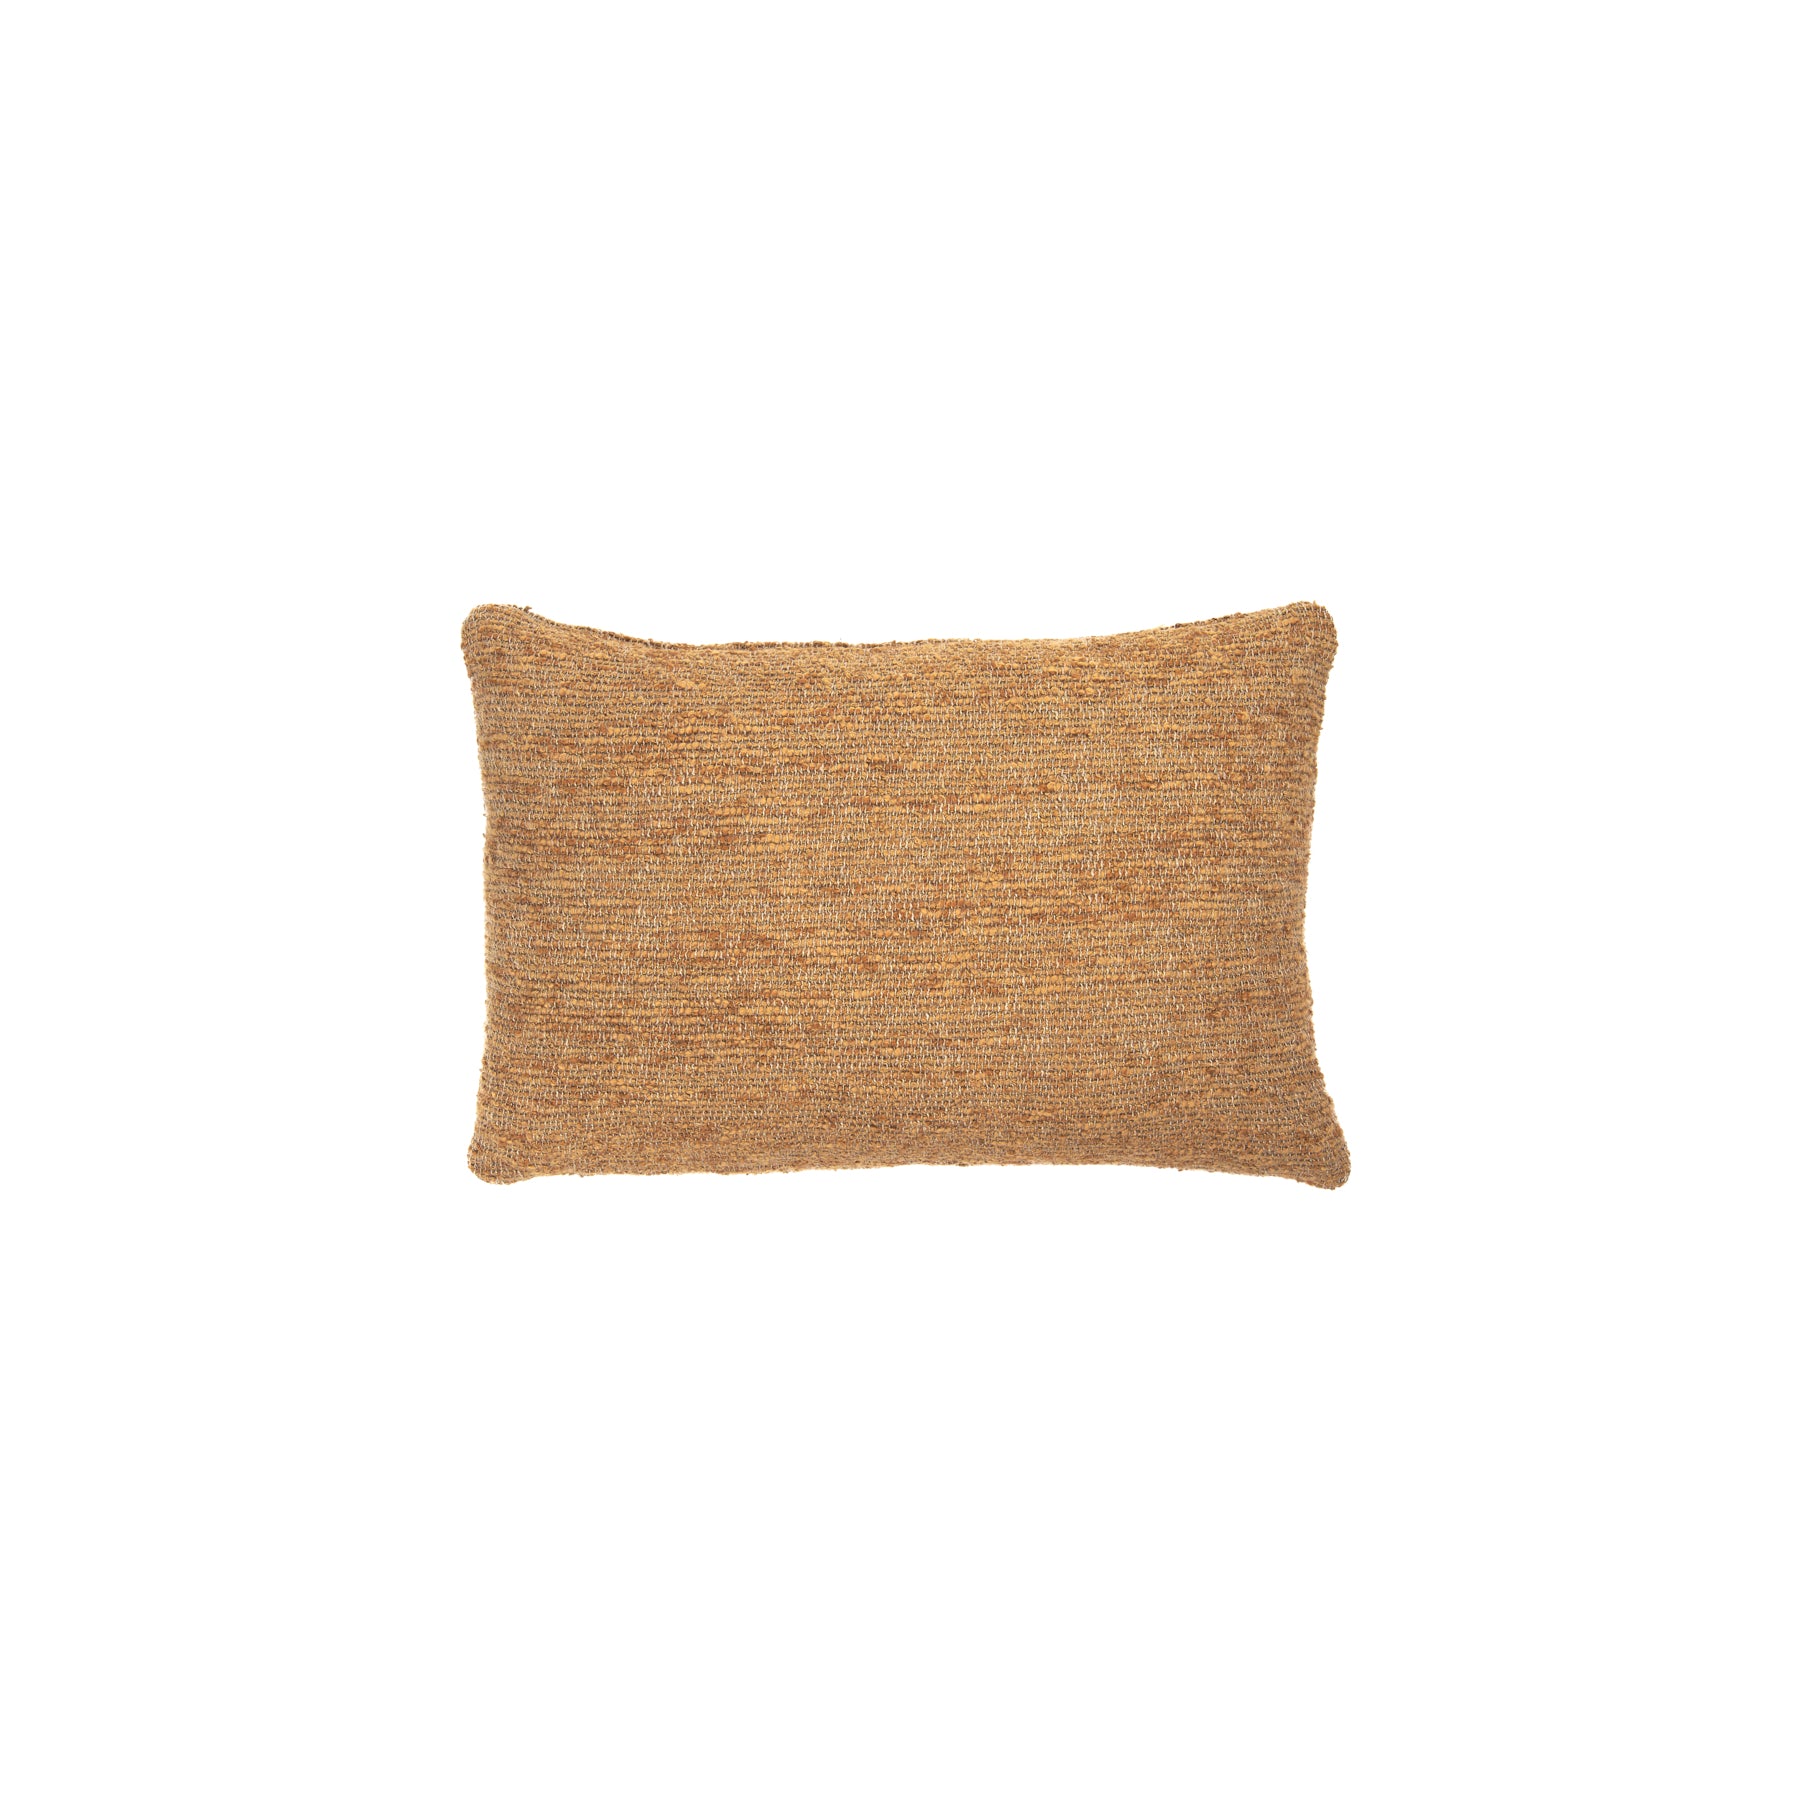 Nomad Lumbar Pillow, Set of 2, Camel